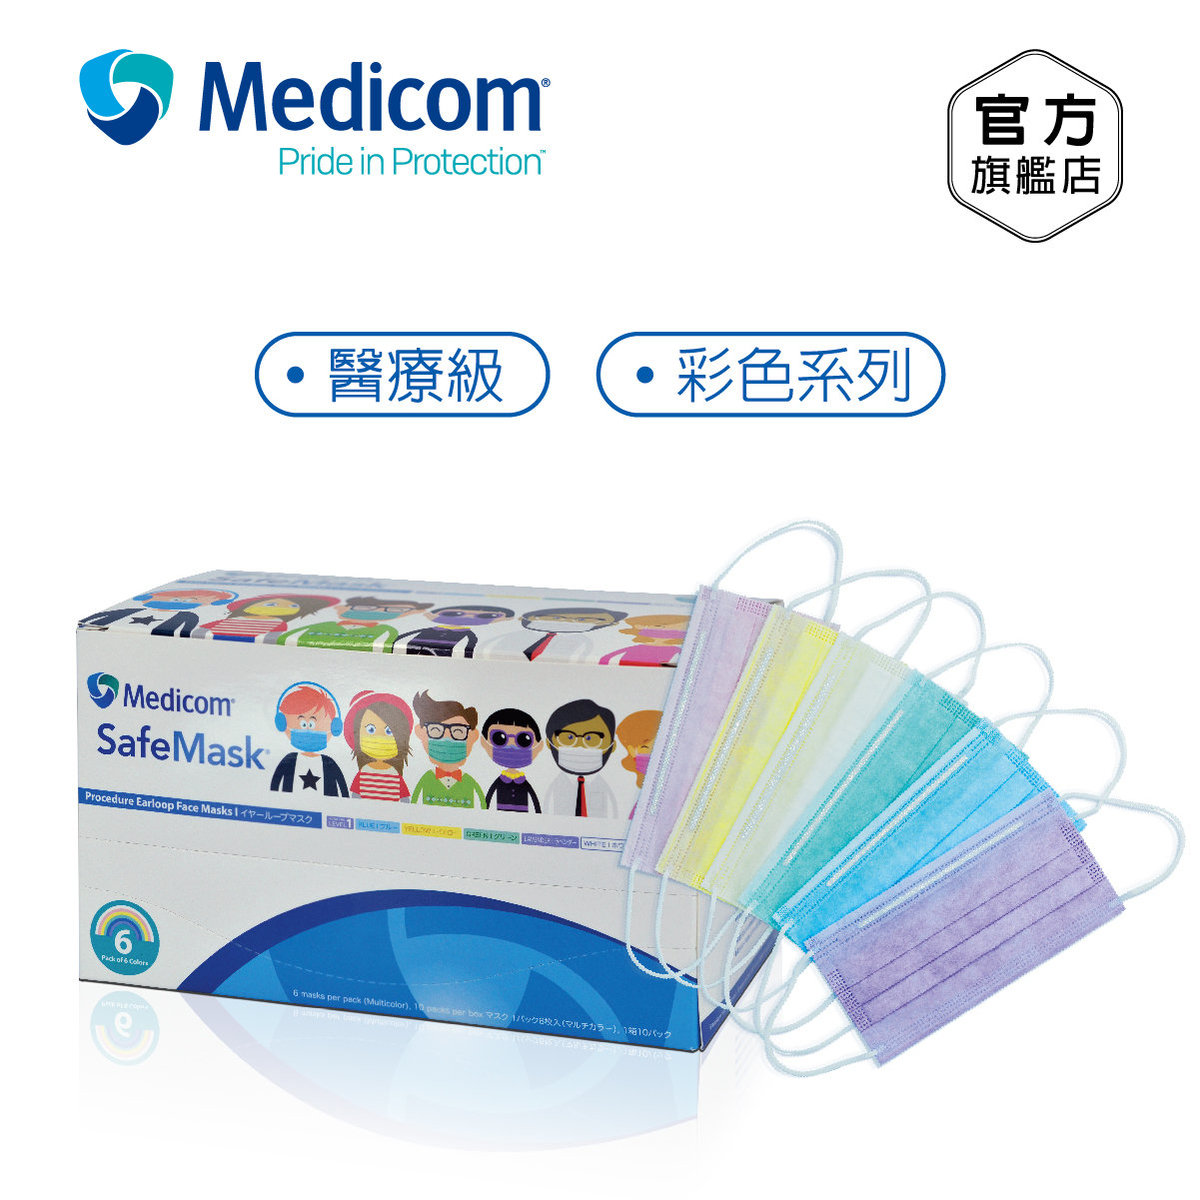 SafeMask 彩色醫用口罩 6色/包, 10包/盒 #PMR2120 "有效期：2025年2月6日"